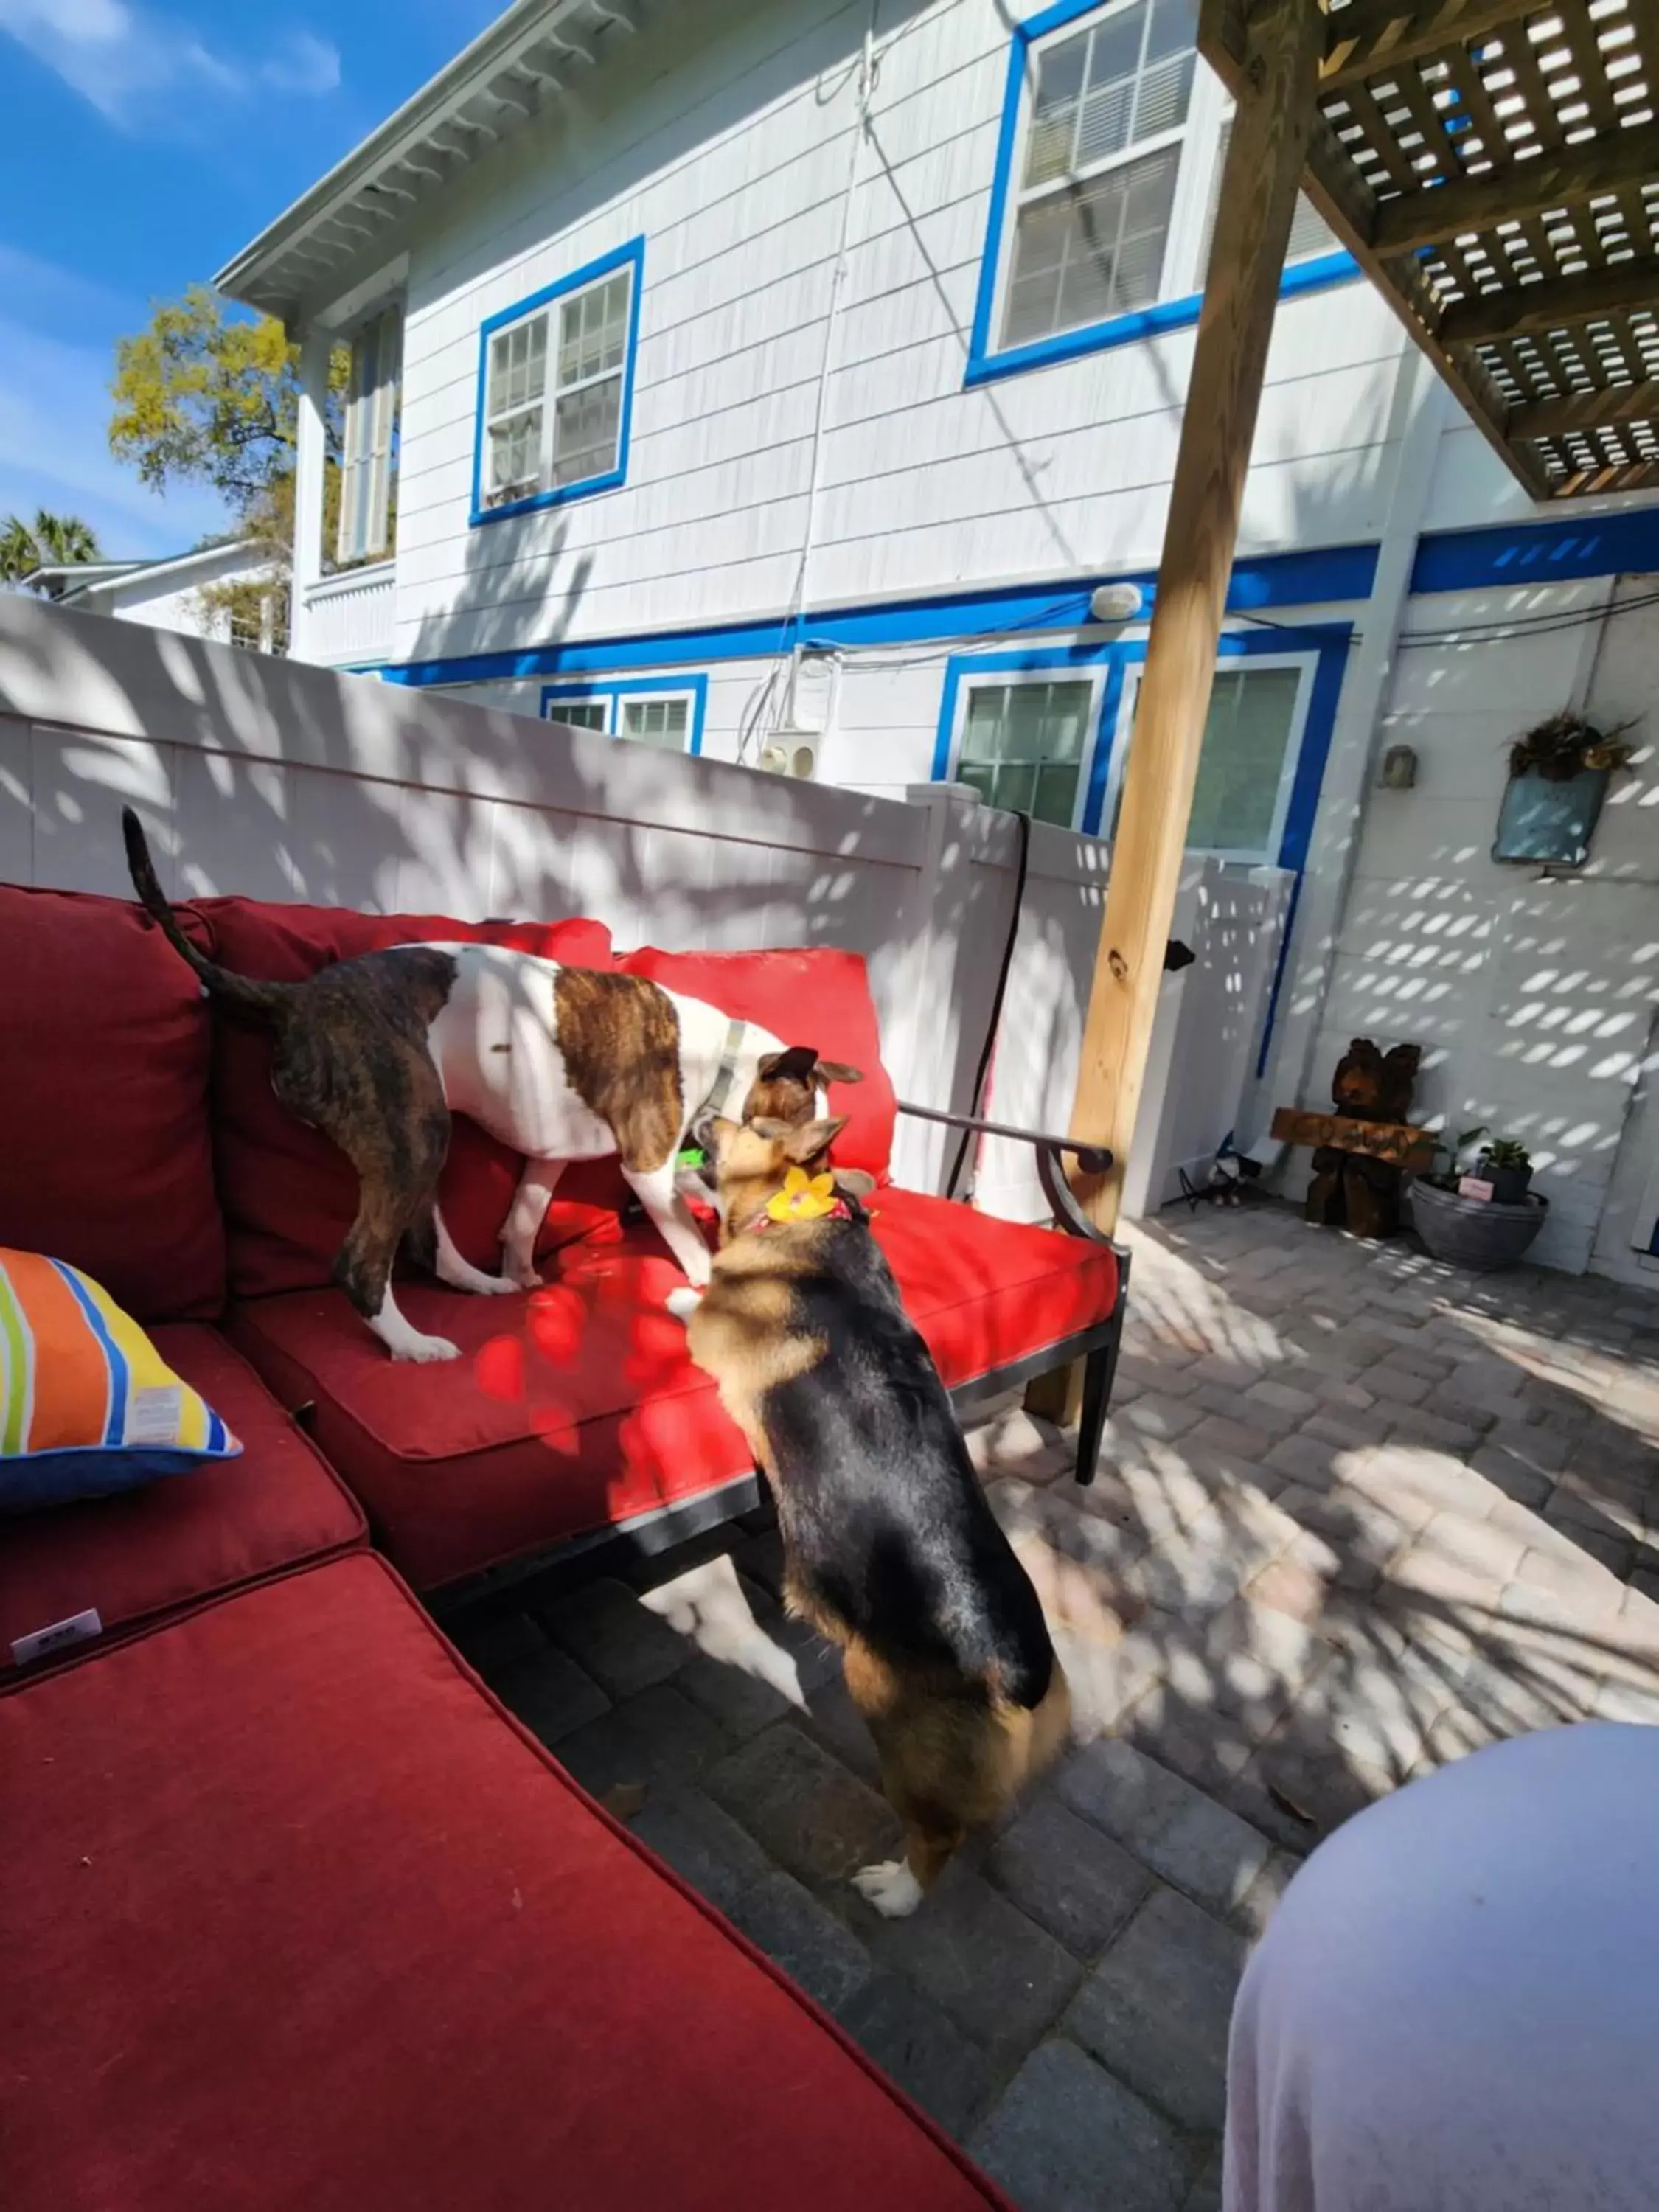 Pets in Tybee Island Inn Bed & Breakfast